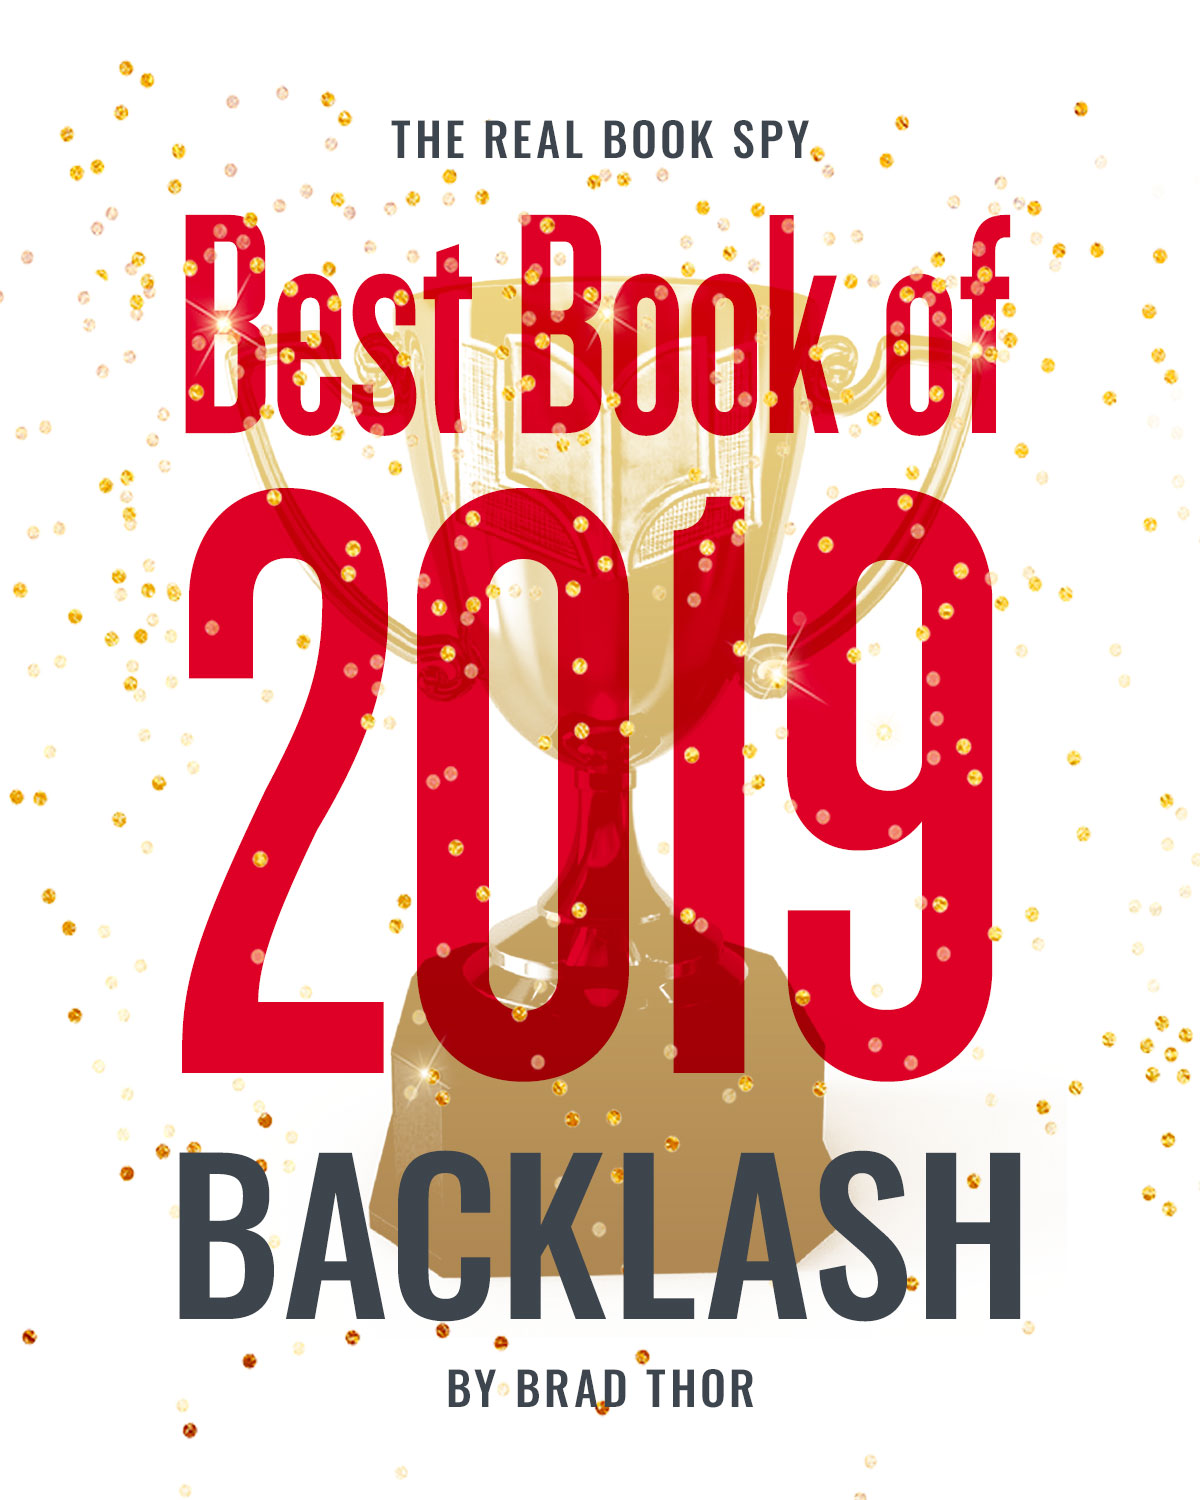 Breaking! BACKLASH Best Book of 2019 Brad Thor